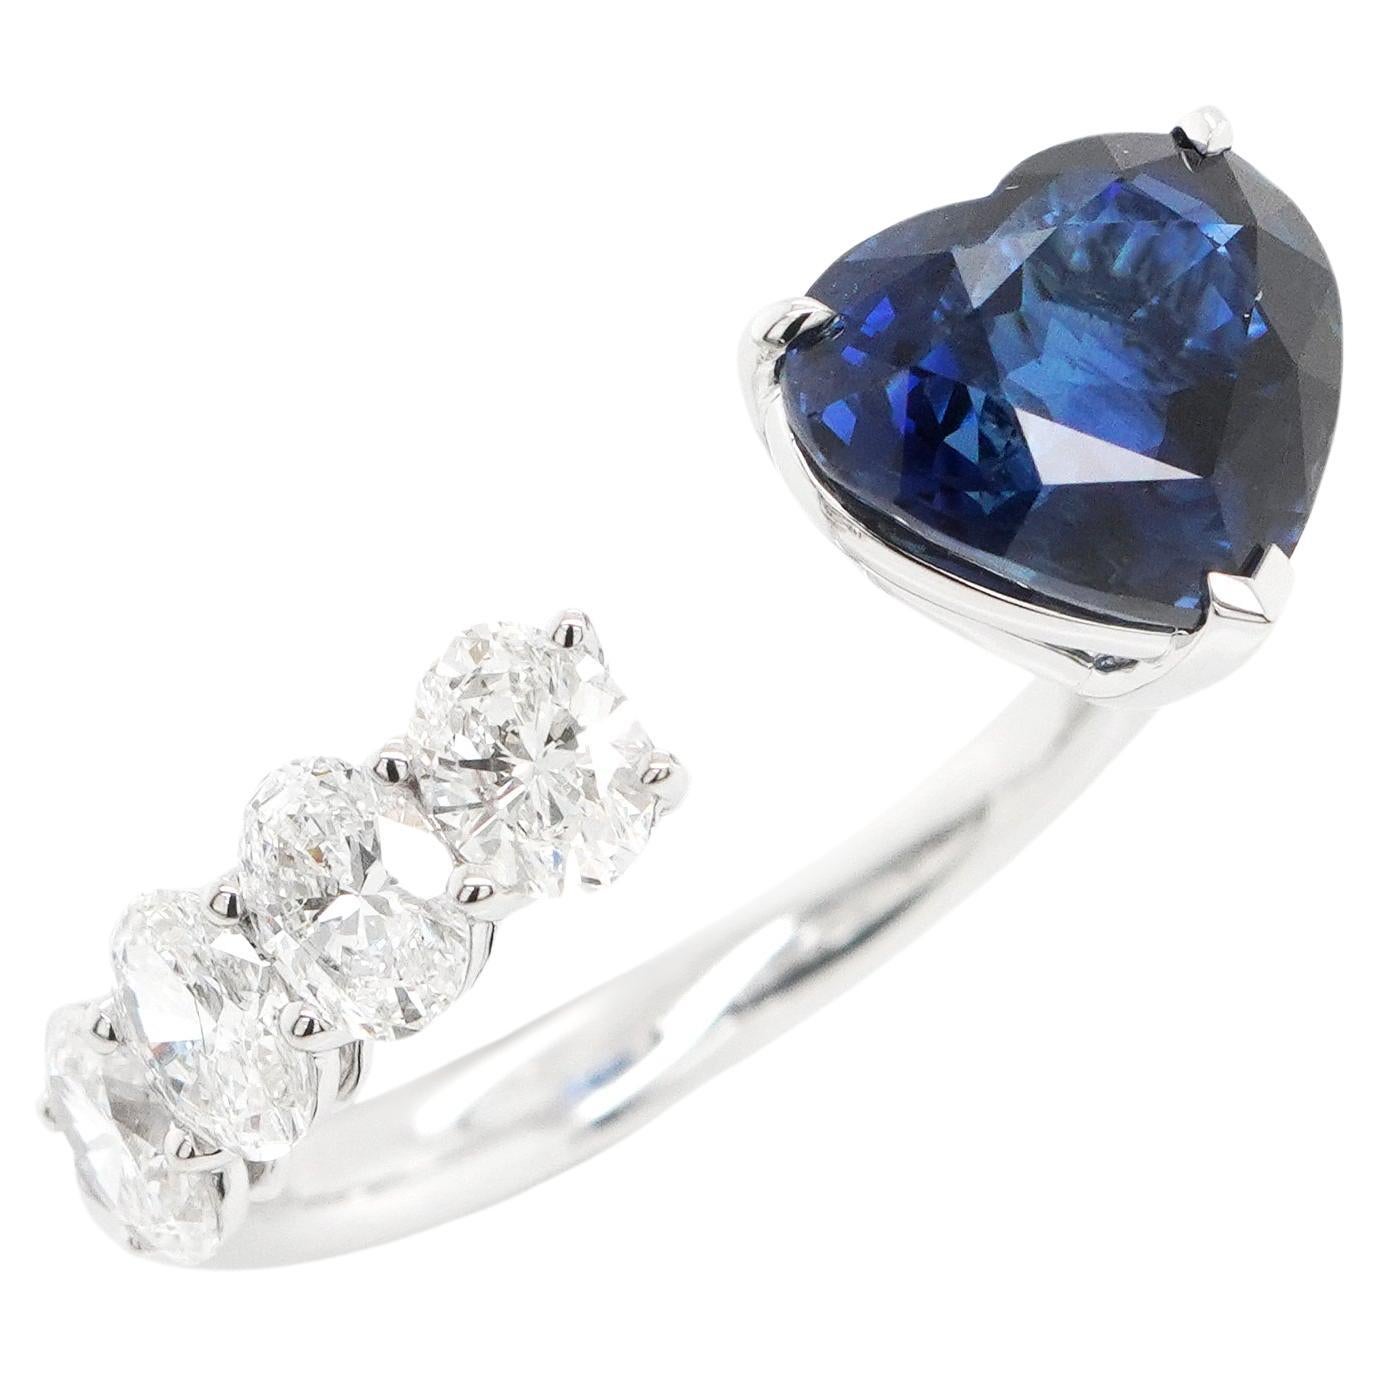 BENJAMIN FINE JEWELRY Bague 18 carats saphir bleu 3,14 carats avec diamants